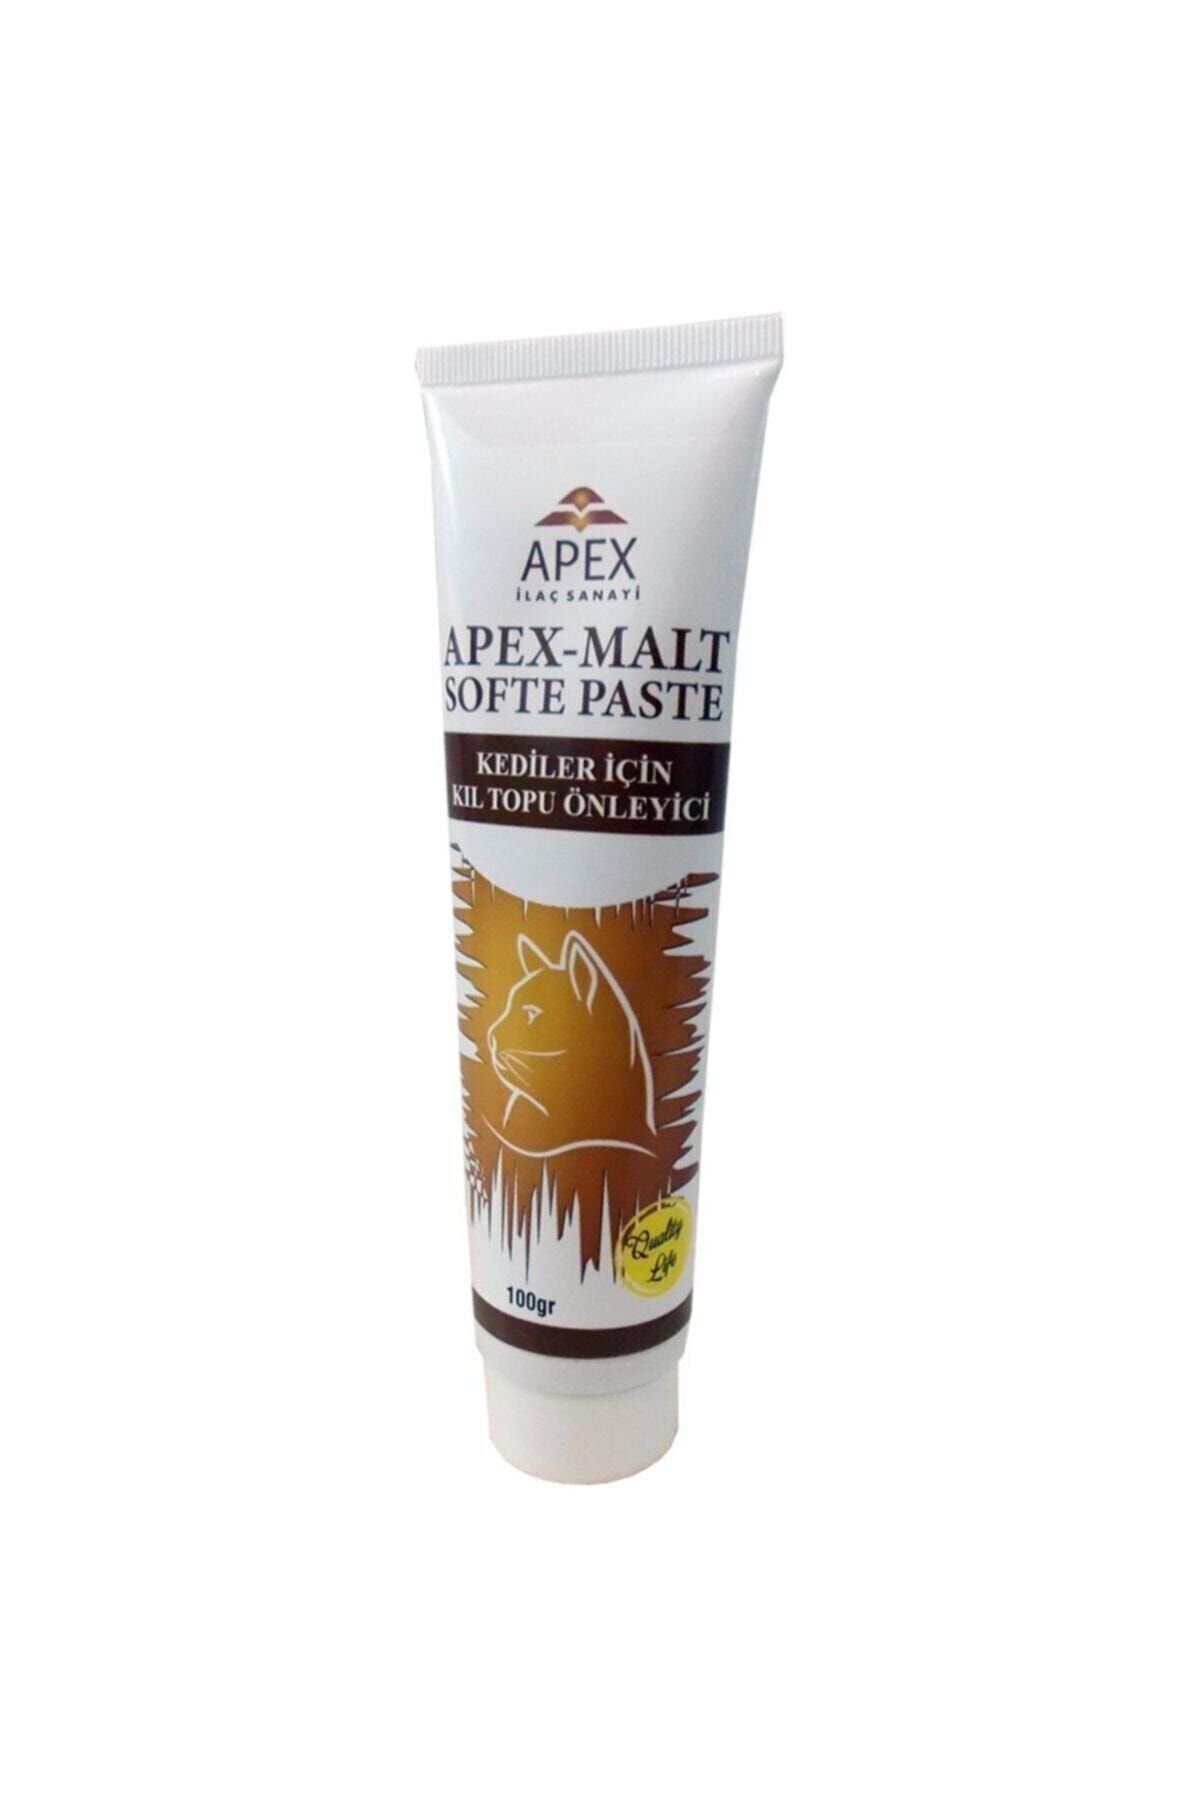 Apex Malt Softe Paste 100 gr (Kediler Için Kıl Topu Önleyici)